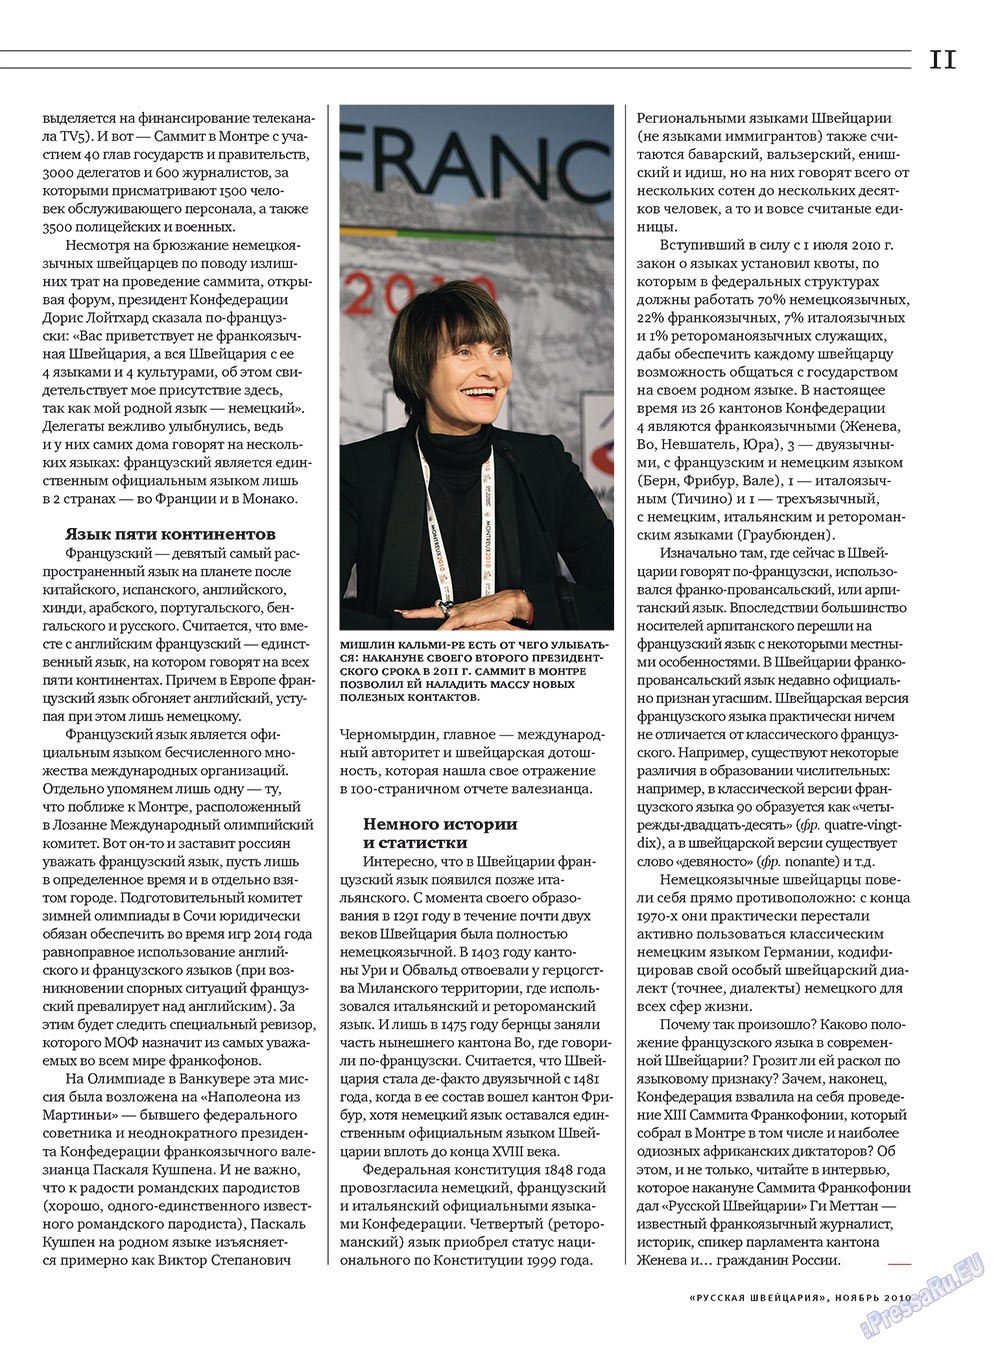 Russkaja Schweizaria (Zeitschrift). 2010 Jahr, Ausgabe 9, Seite 11